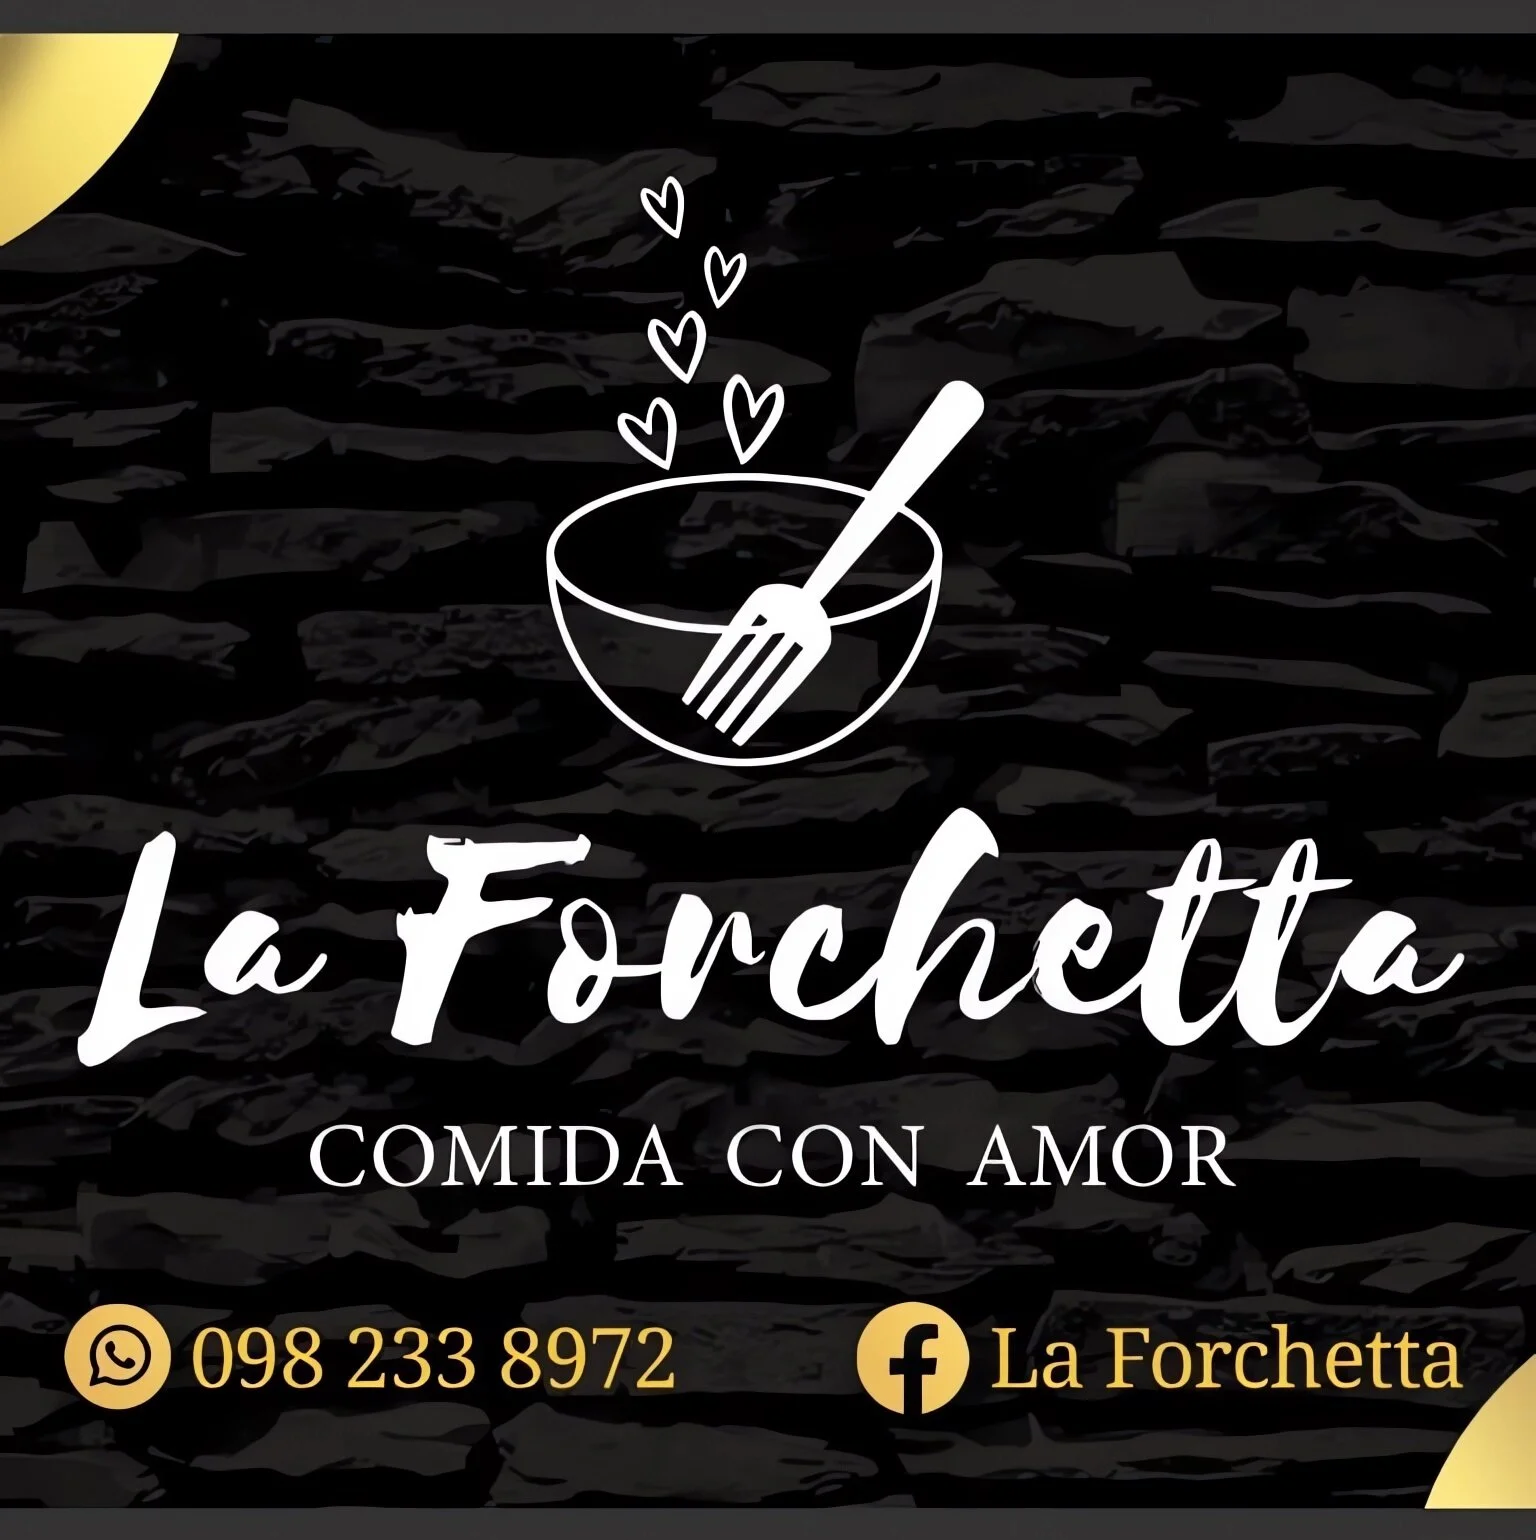 Restaurante-forchetta-restaurante-21690